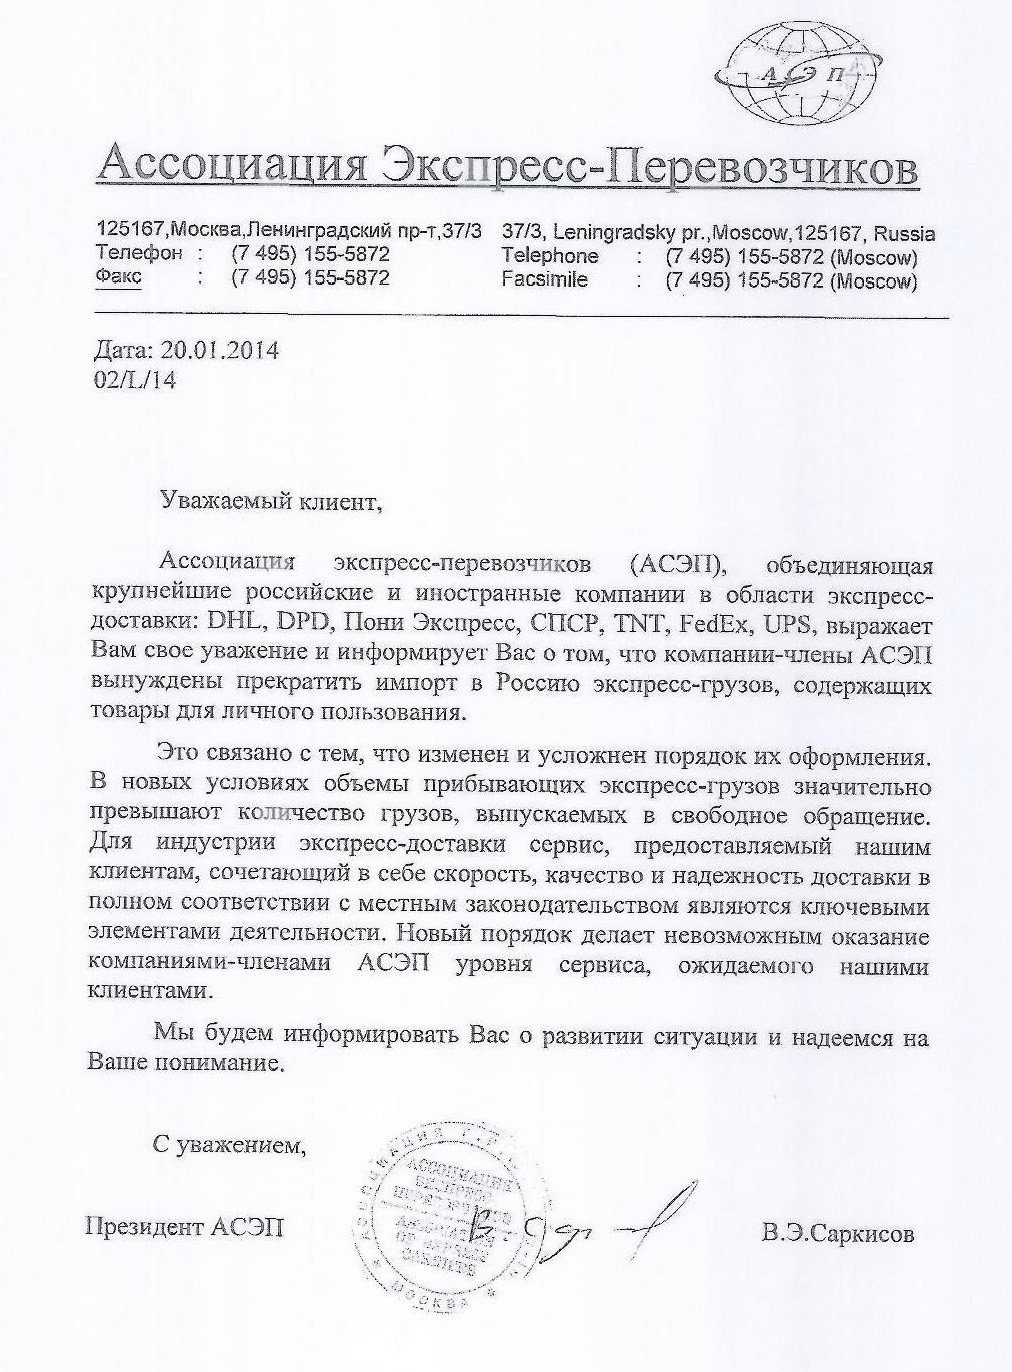 Сервисы экспресс доставки прекратили доставку посылок в Россию